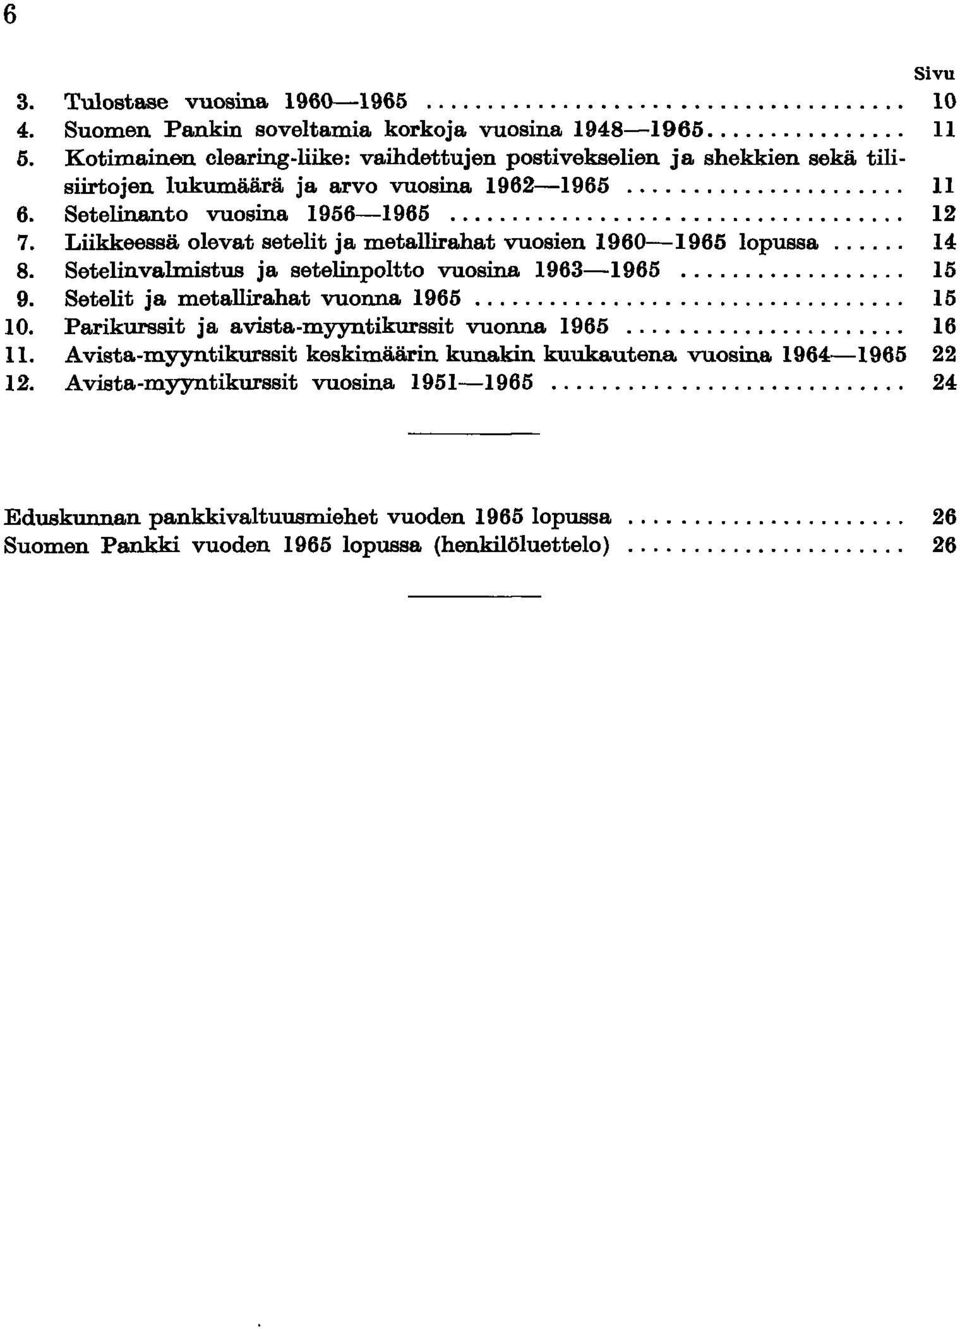 Liikkeessä olevat setelit ja metallirahat vuosien 1960-1965 lopussa... 14 8. Setelinvalmistus ja setelinpoltto vuosina 1963-1965... 15 9. Setelit ja metallirahat vuonna 1965..., 15 10.